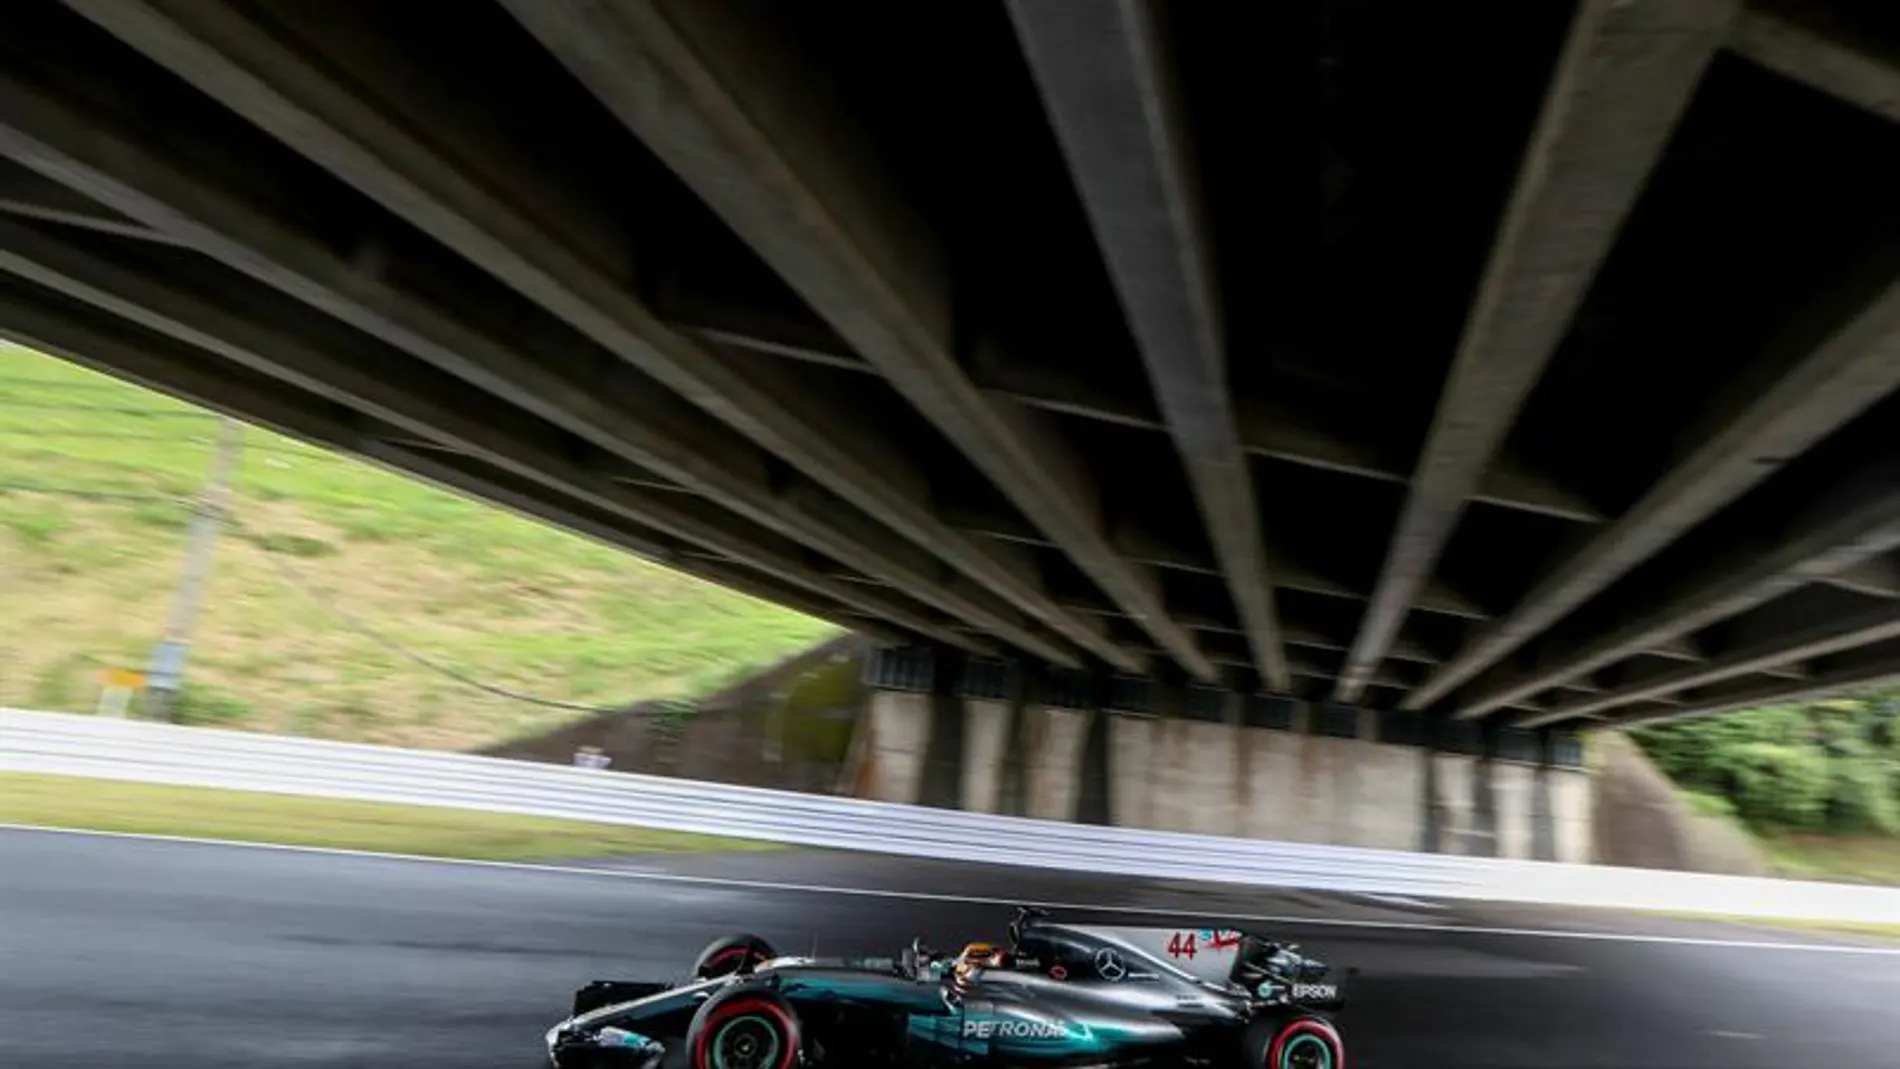 El piloto de Mercedes afronta la última parte de la temporada en un gran estado de forma